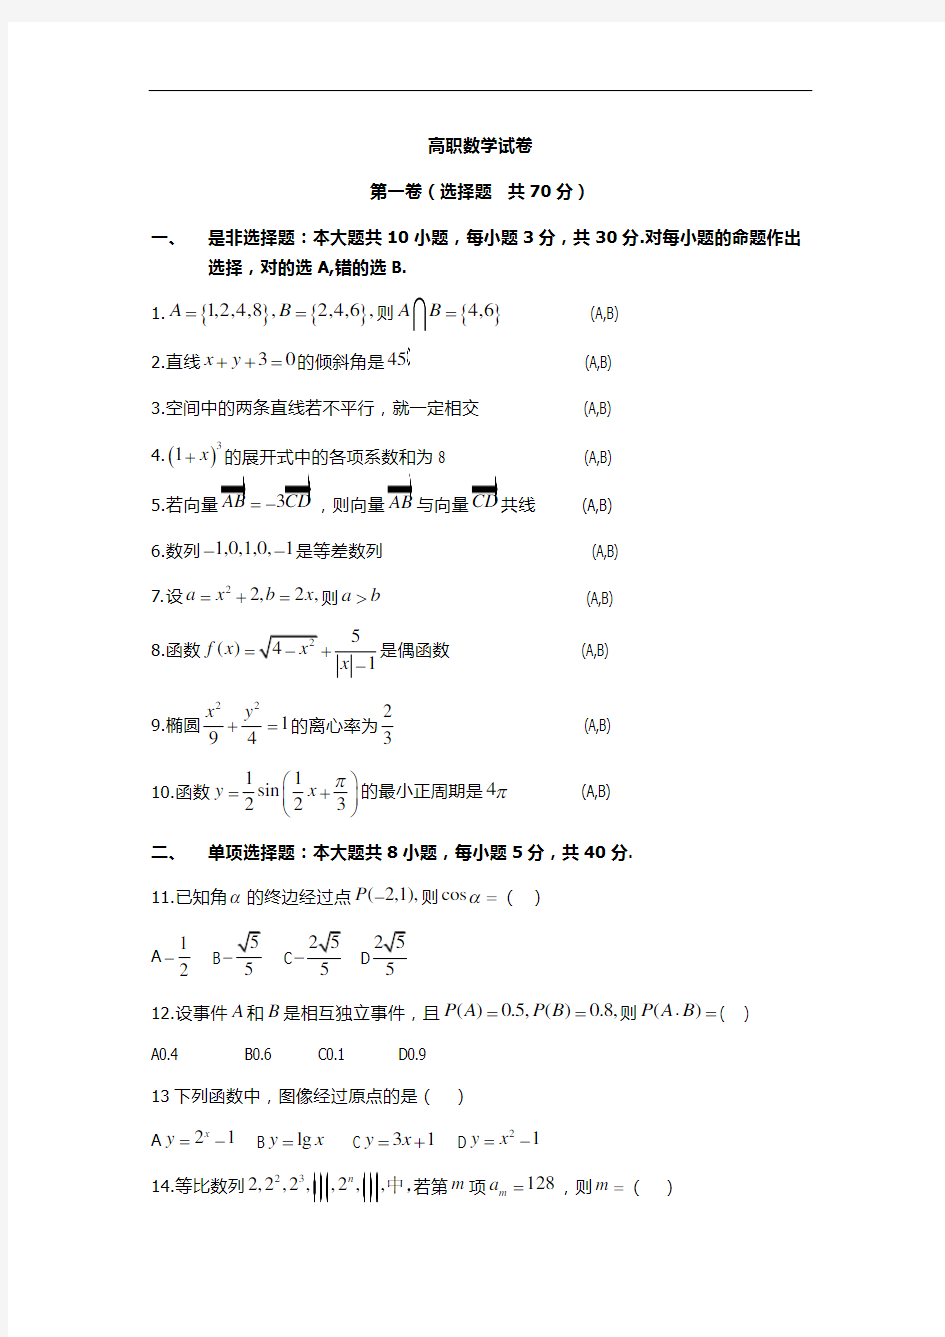 2014江西三校生高考数学模拟试题(12年)